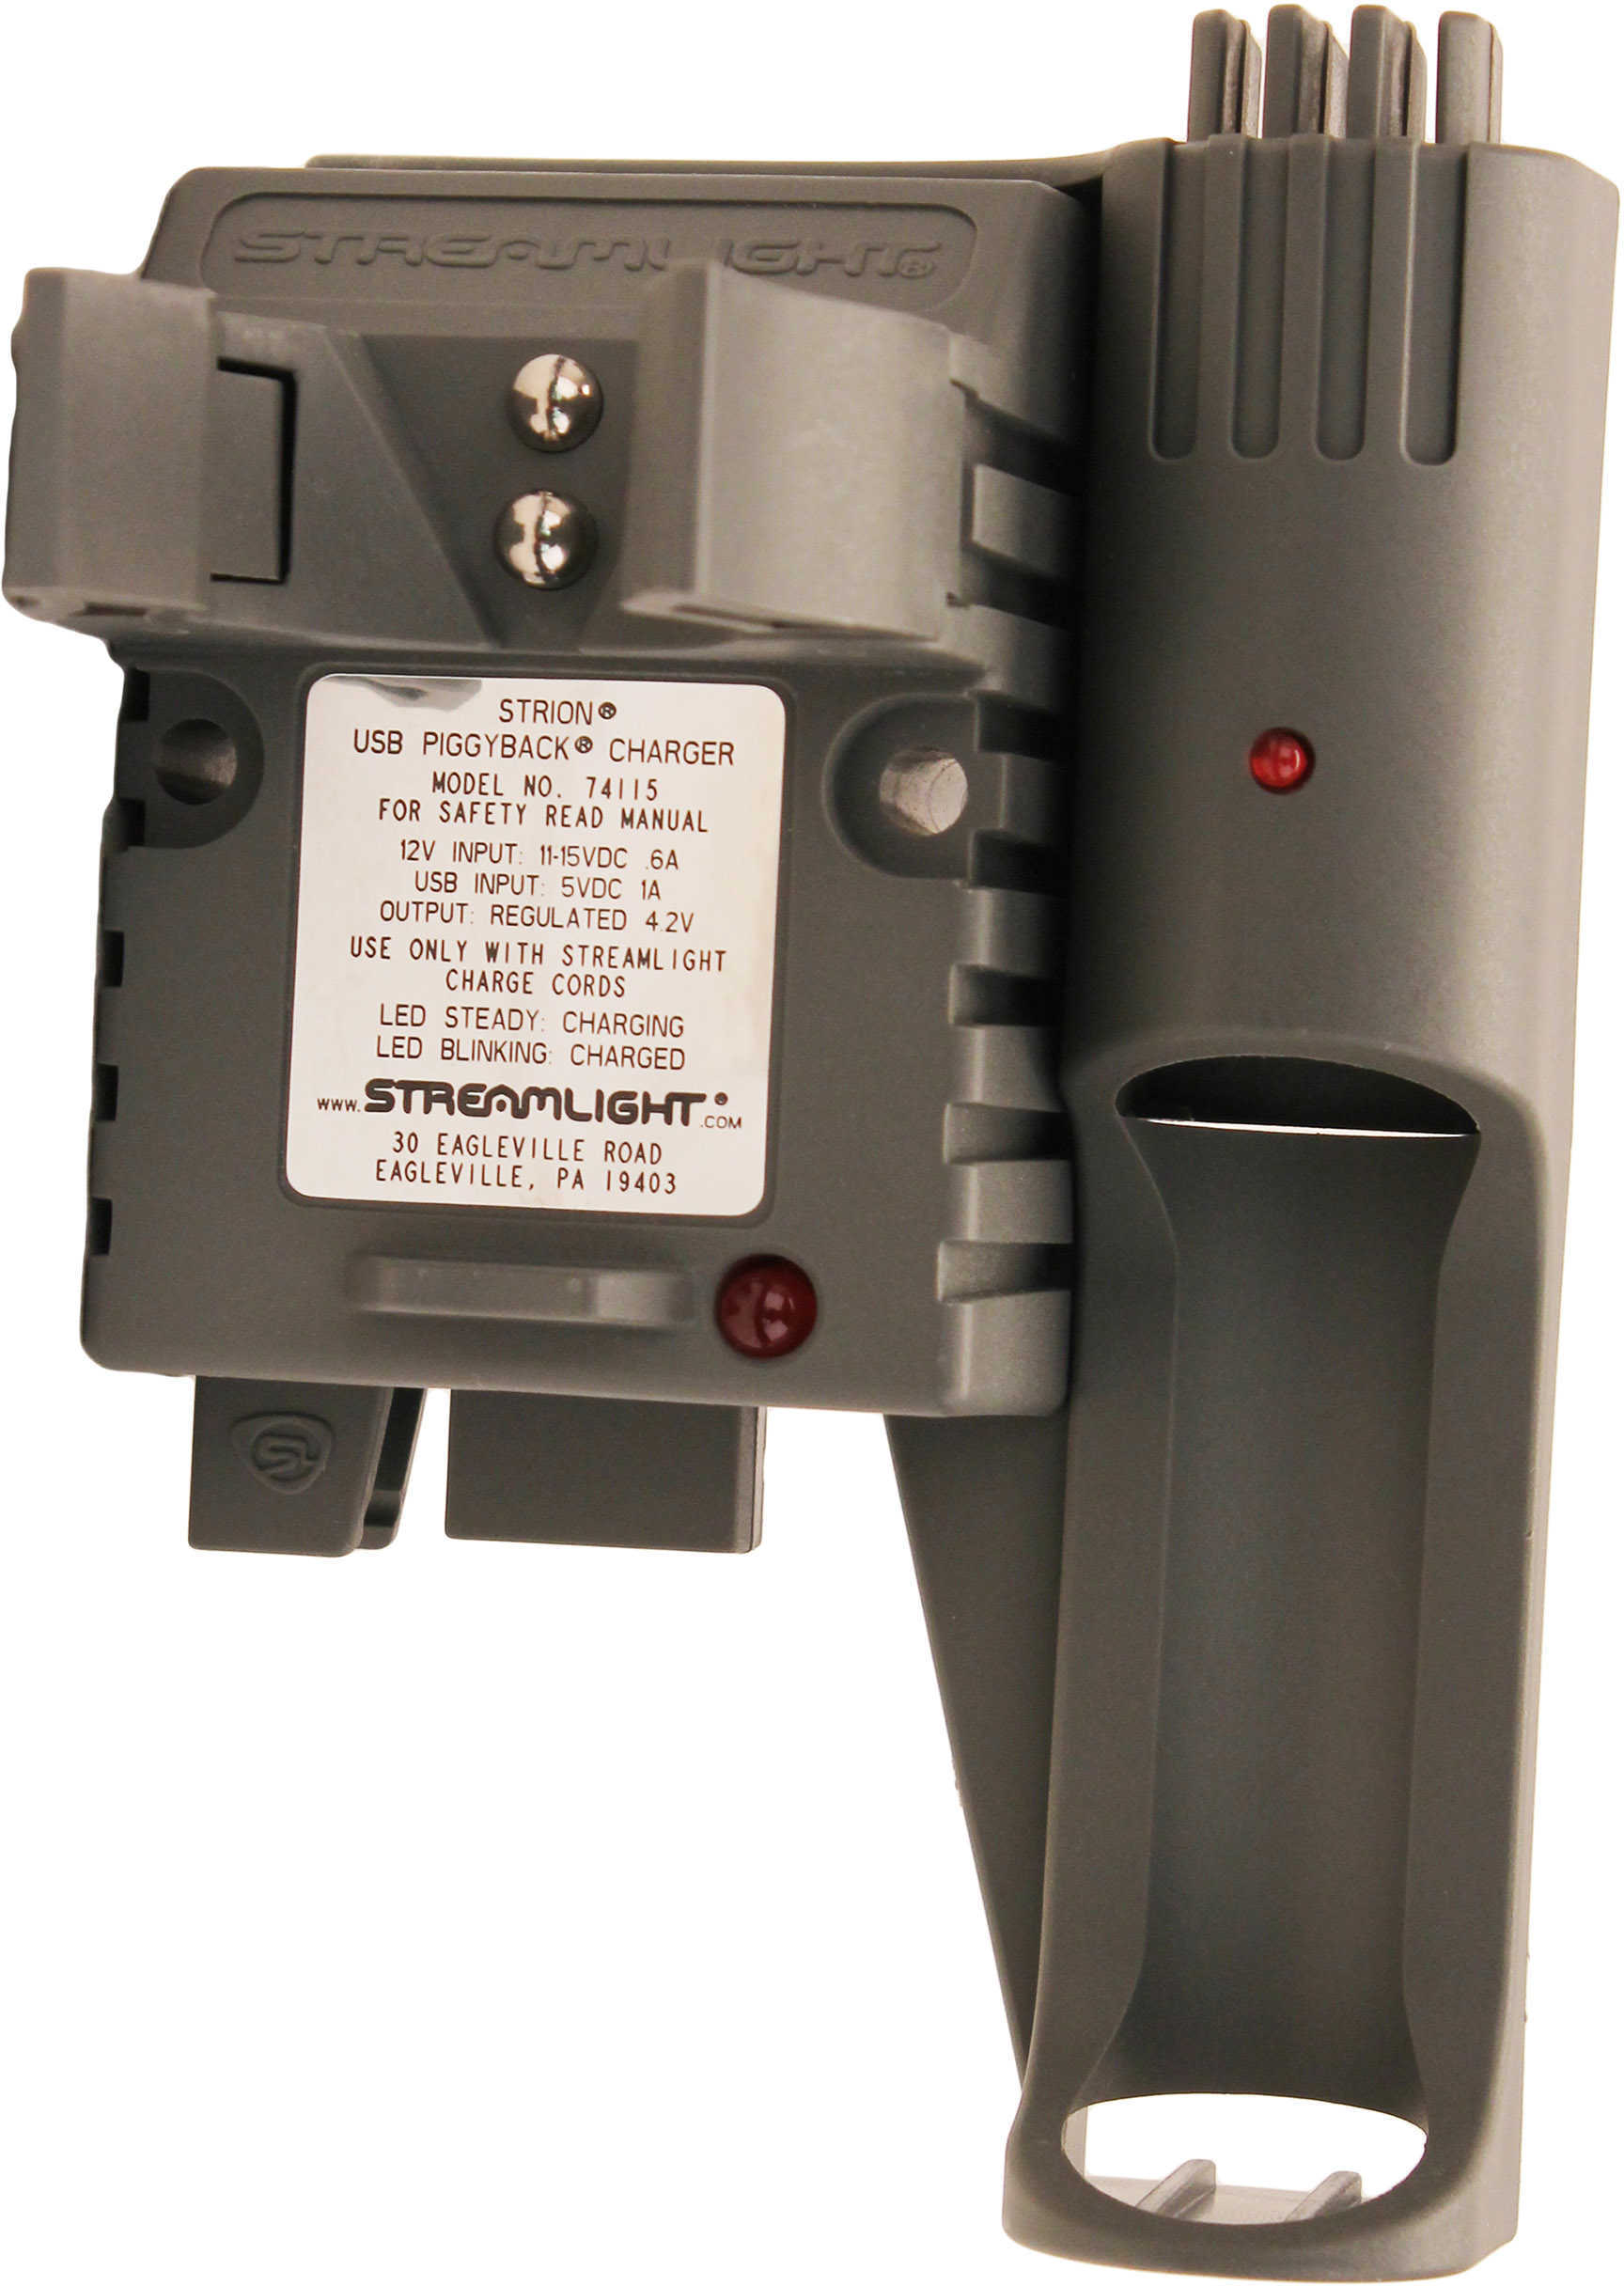 Streamlight Strion USB PiggyBack Charger Holder Md: 74115